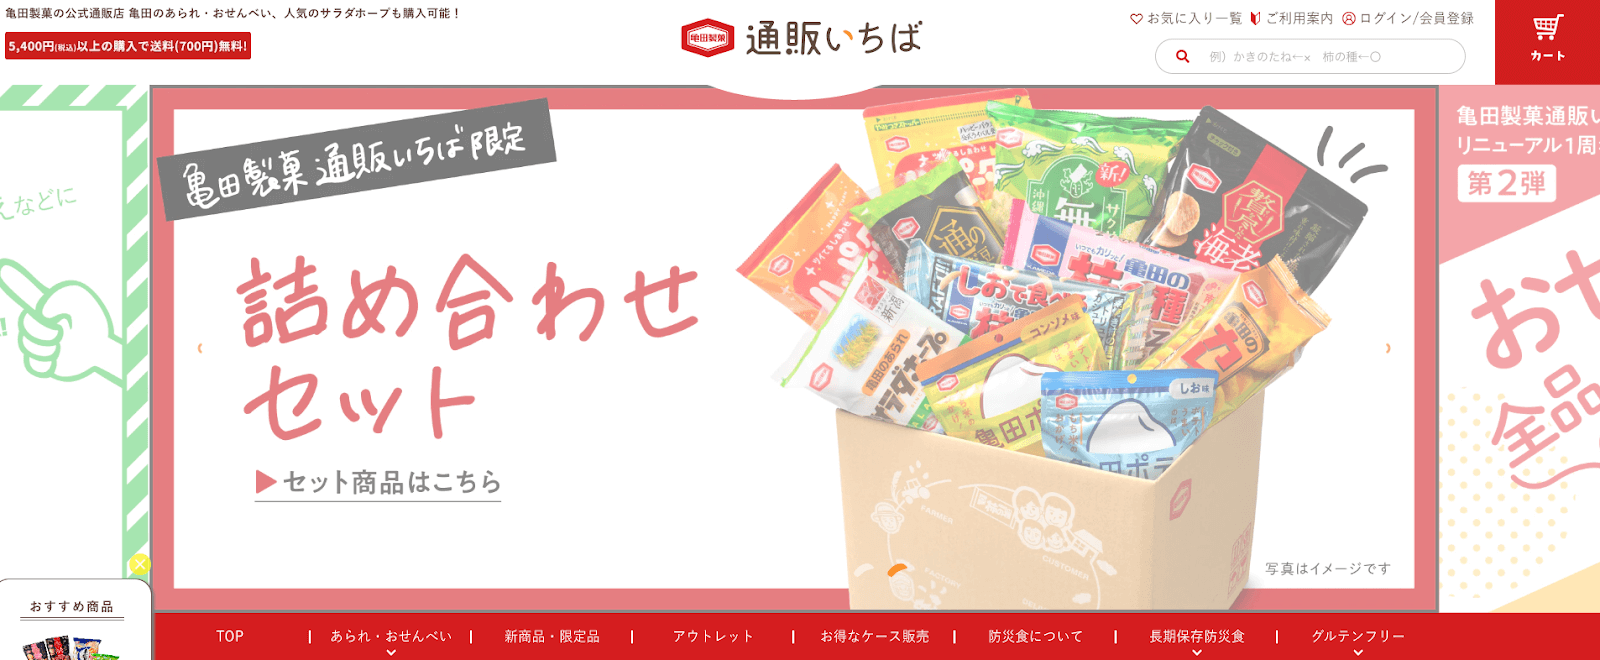 亀田製菓のecサイト